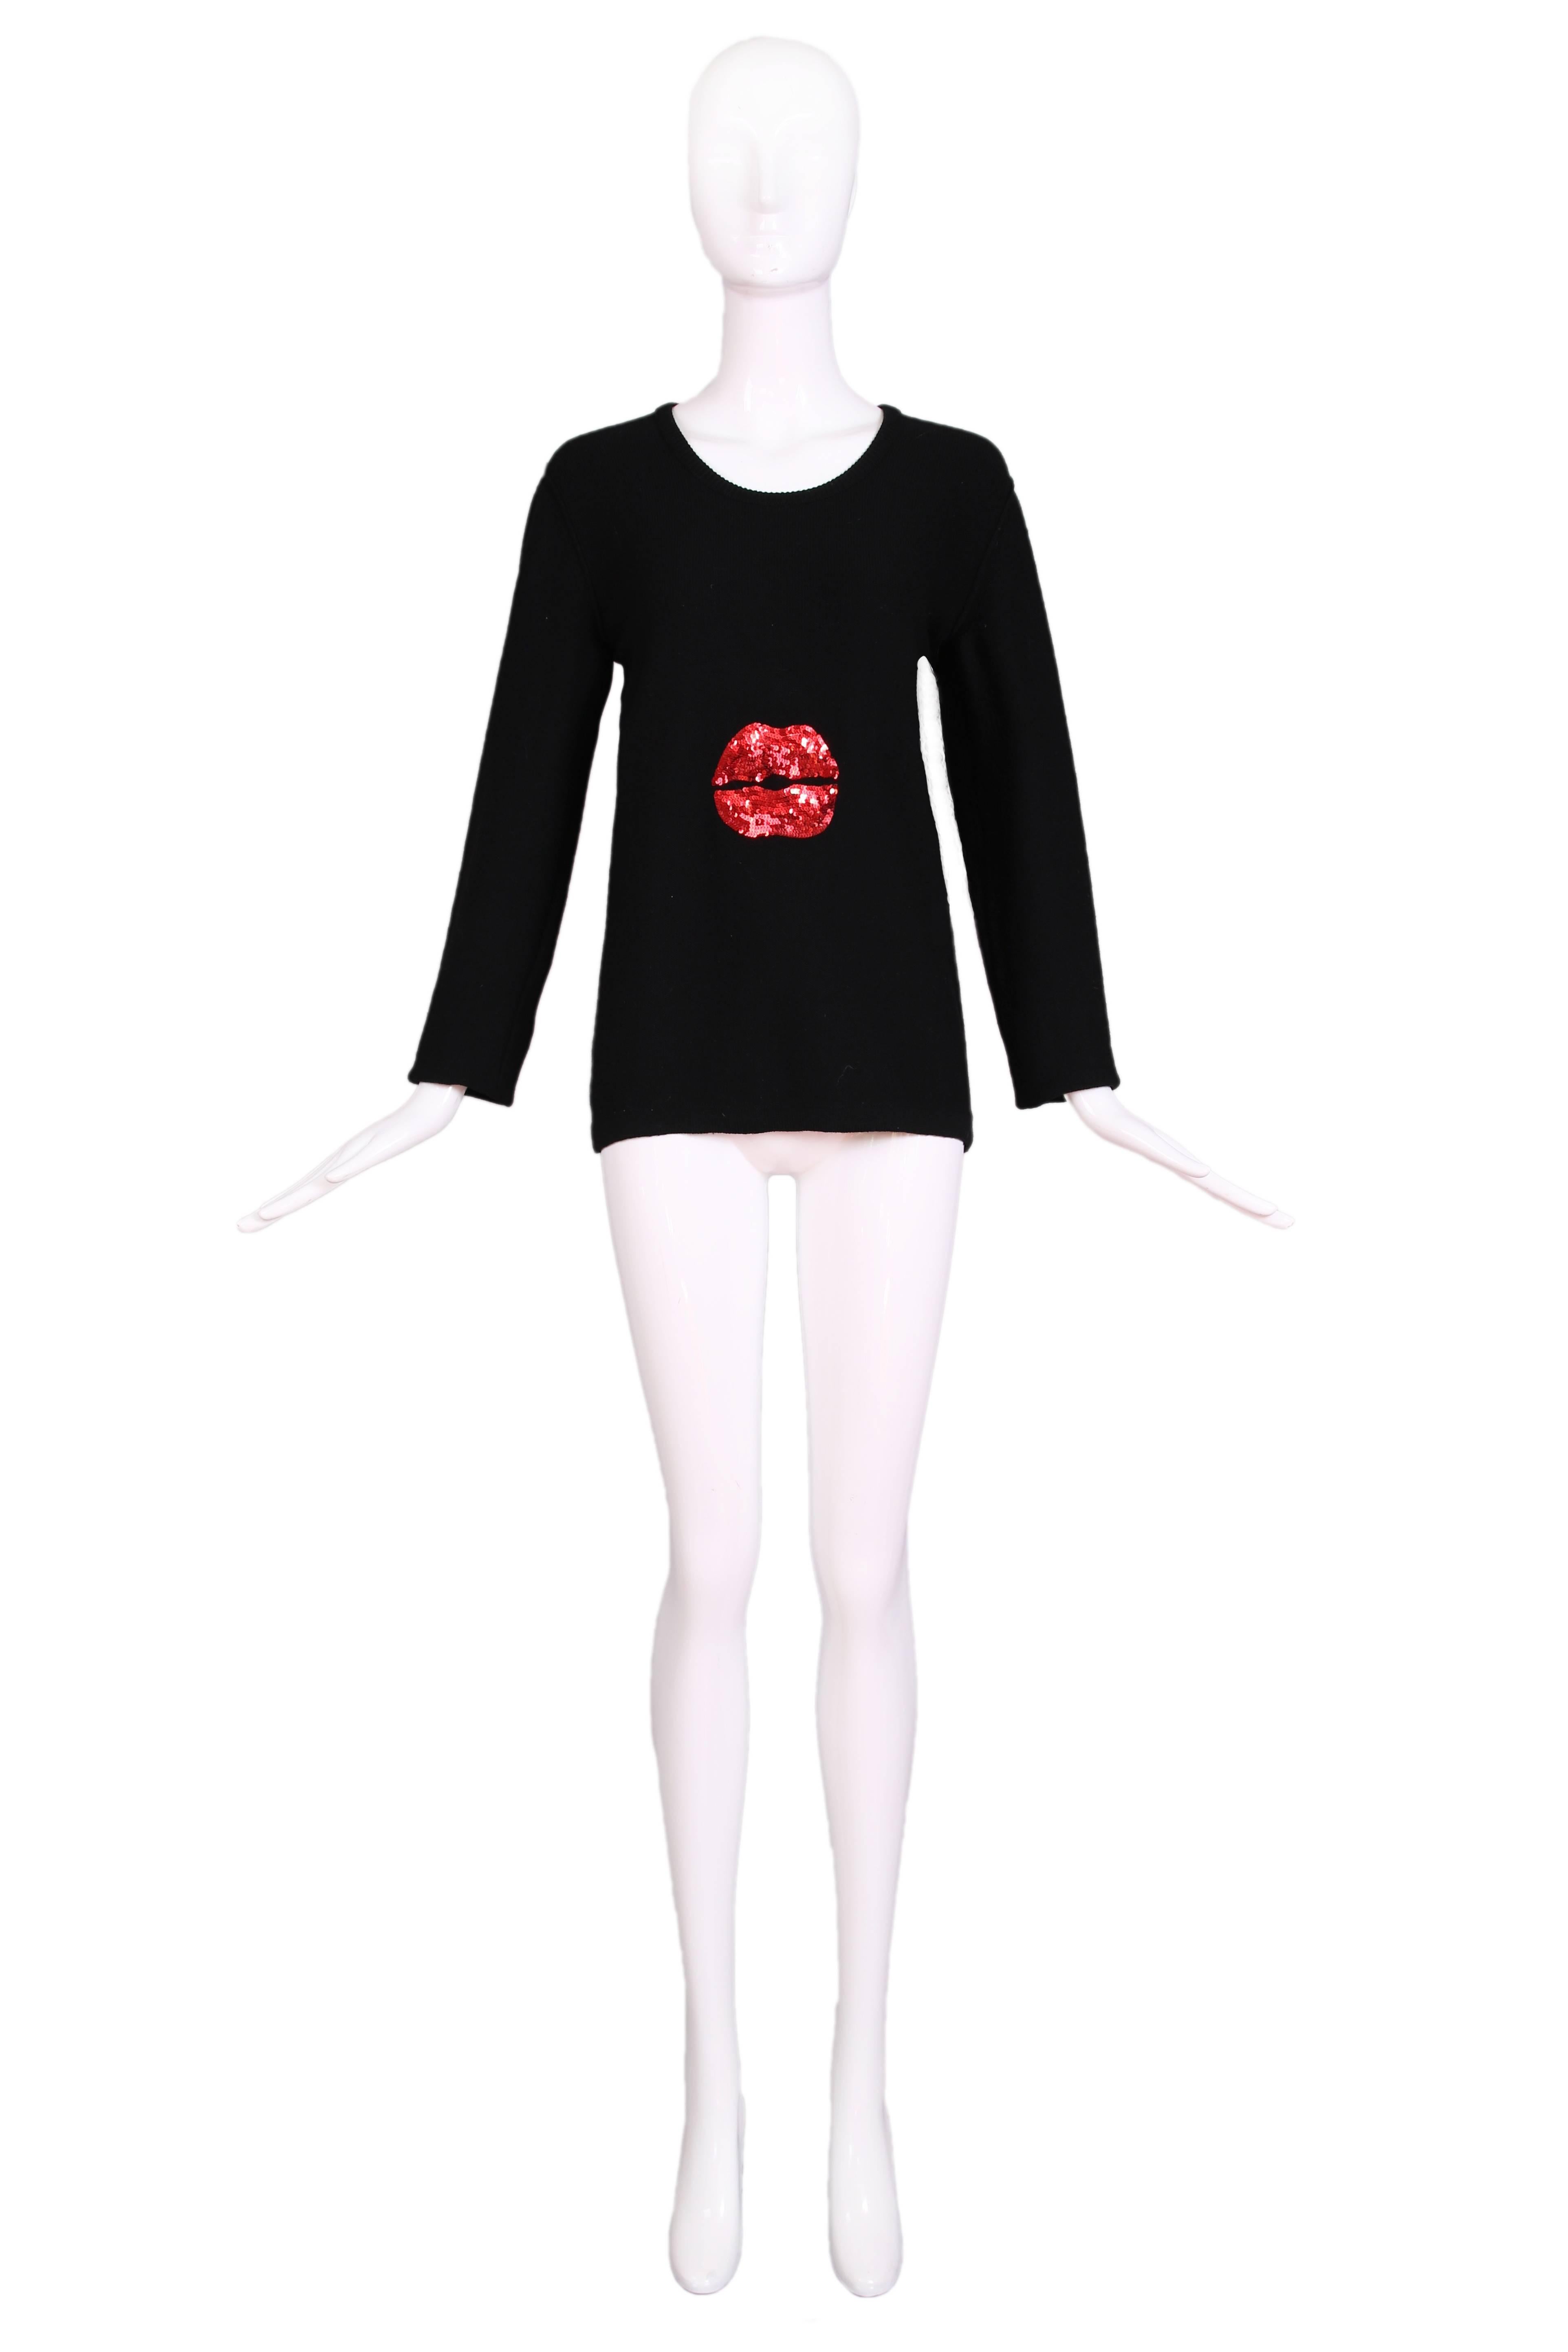 Vintage Sonia Rykiel schwarzer Pullover mit Rundhalsausschnitt, langen Ärmeln und rotem Paillettenbesatz aus einer Woll-Kaschmir-Mischung  lippen an der Vorderseite. In ausgezeichnetem Zustand. Größe 40. 
MASSNAHMEN:
Büste - 34